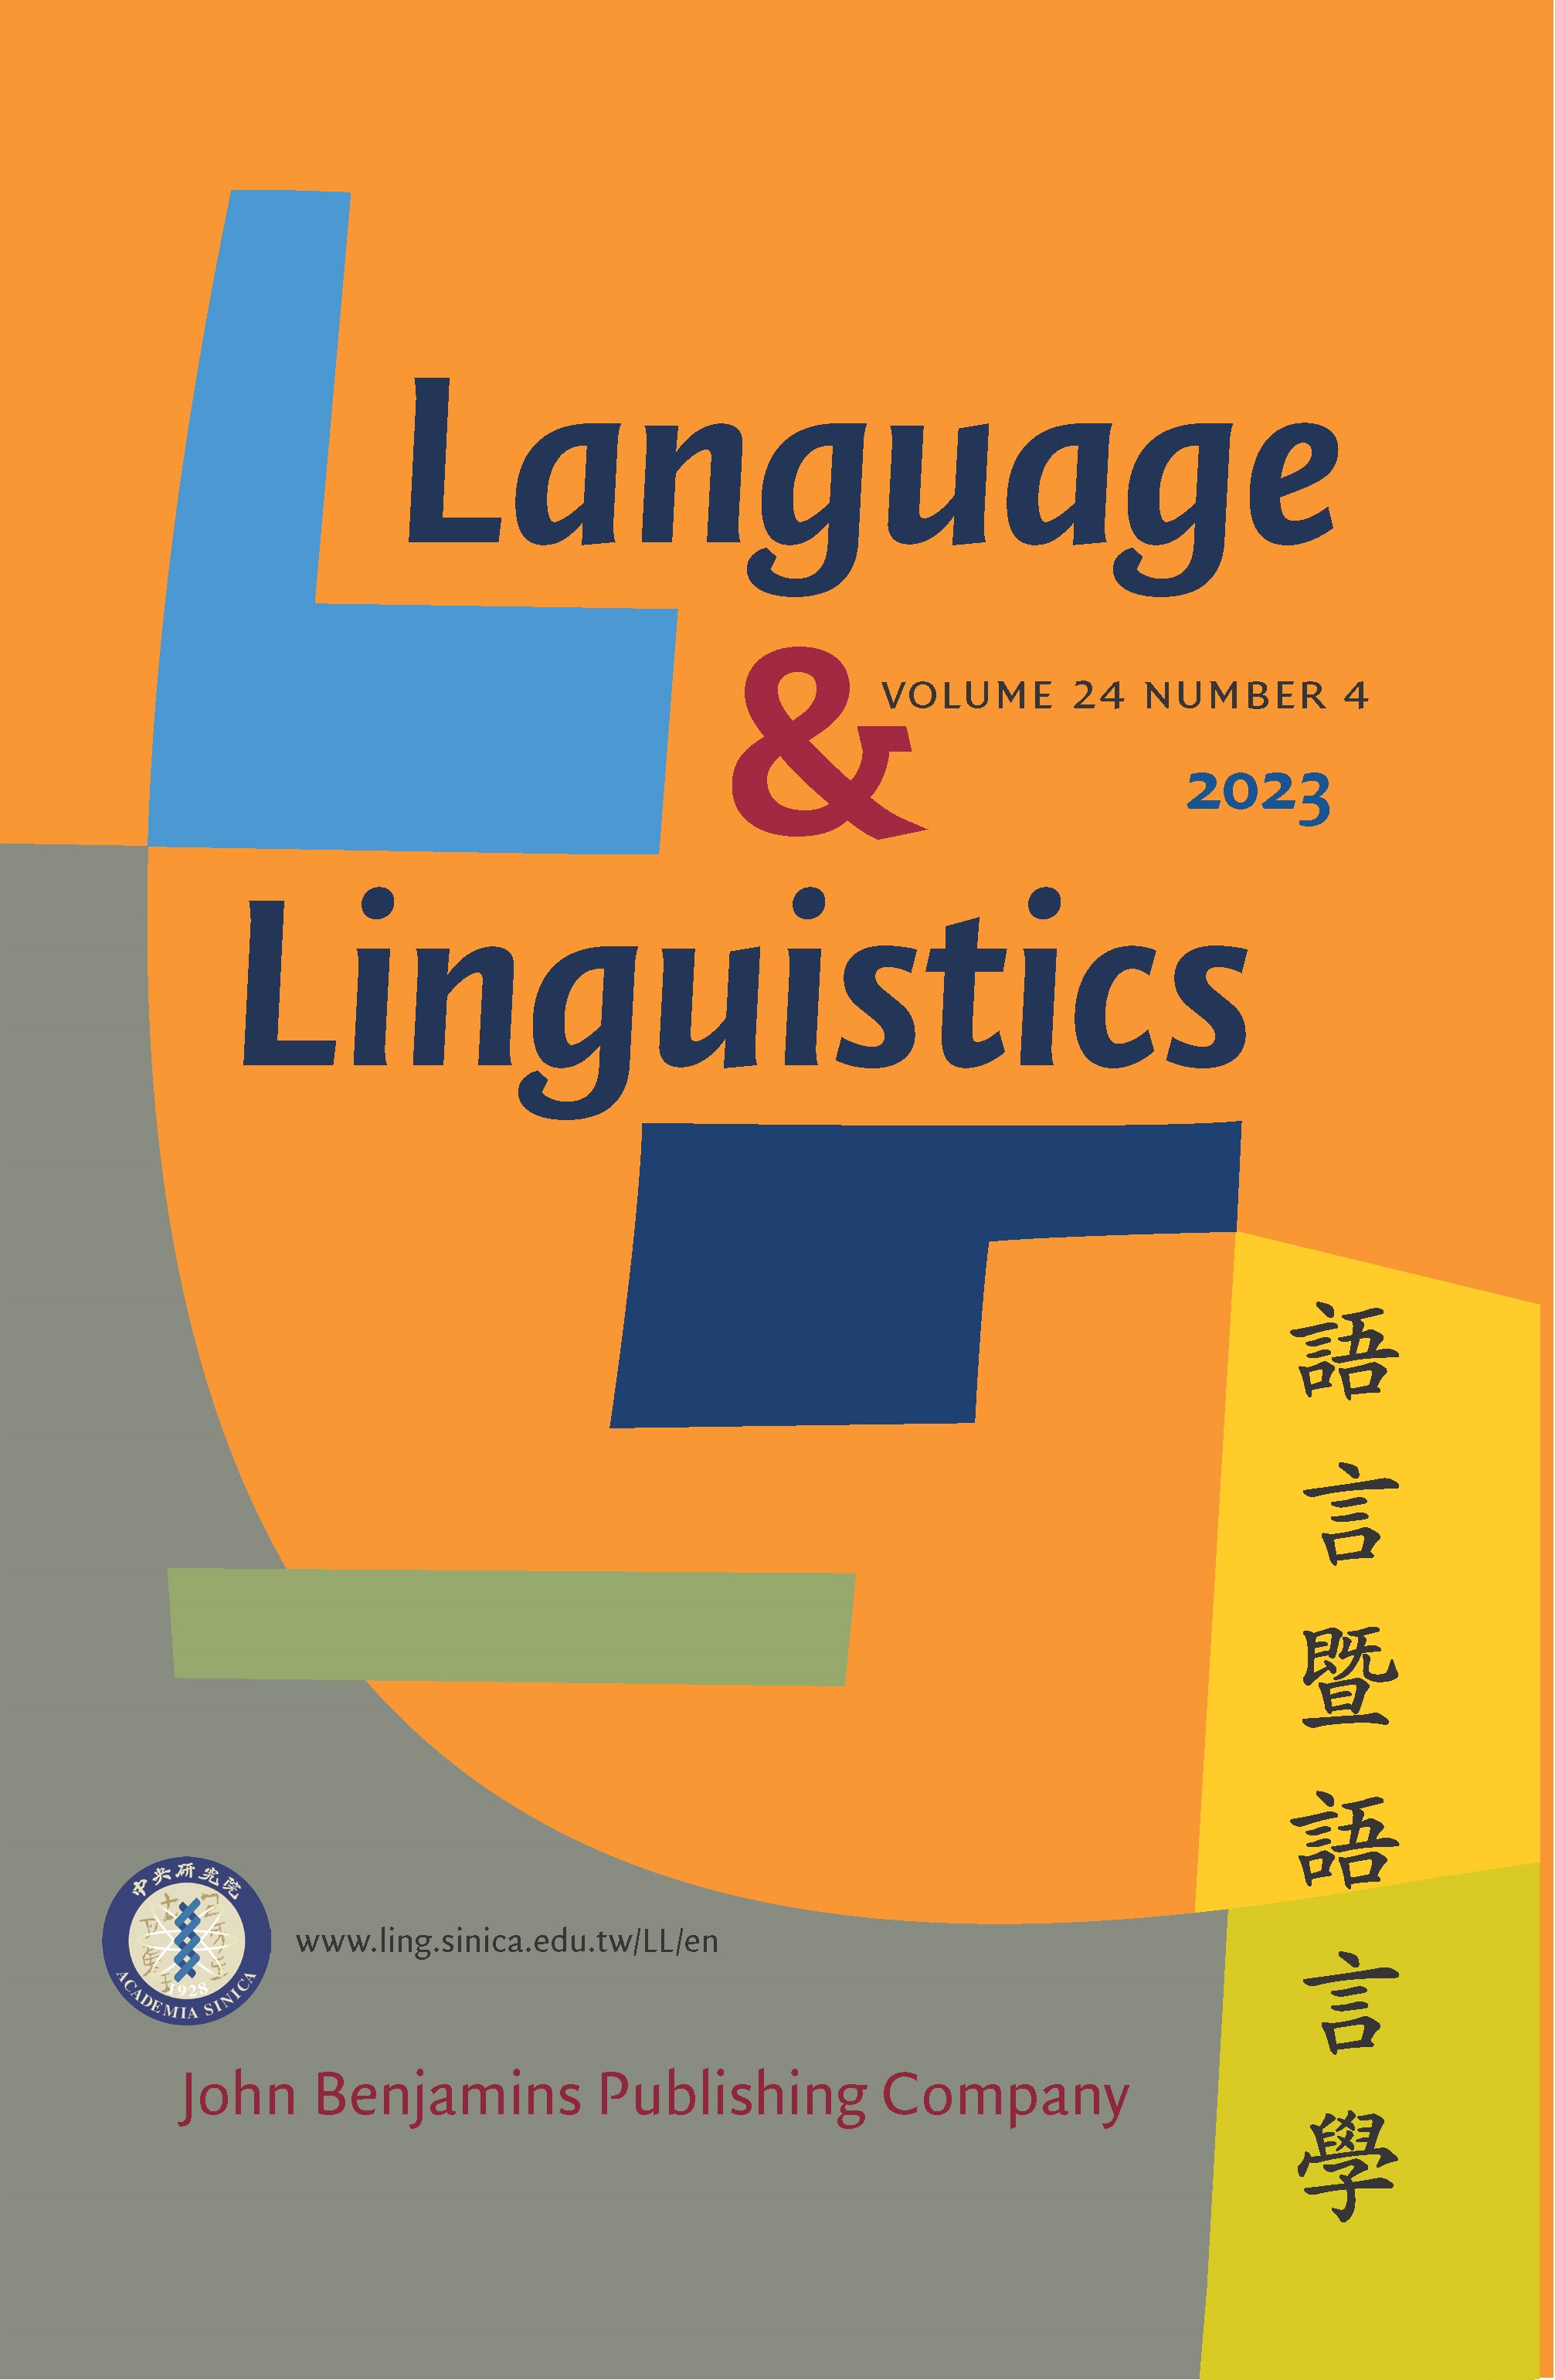 《語言暨語言學》第24卷第4期已出版